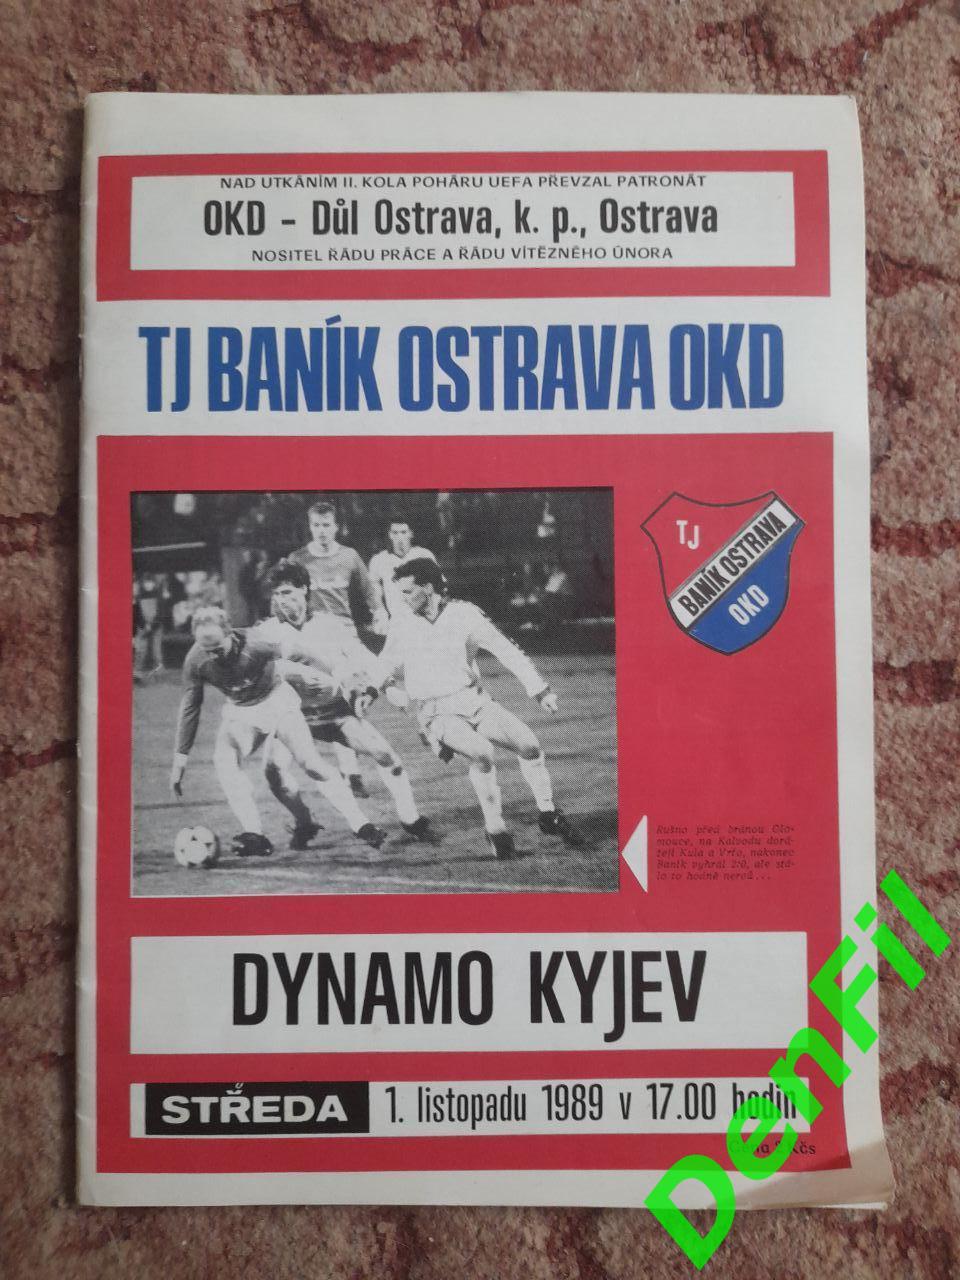 Баник - Динамо 1986 выезд